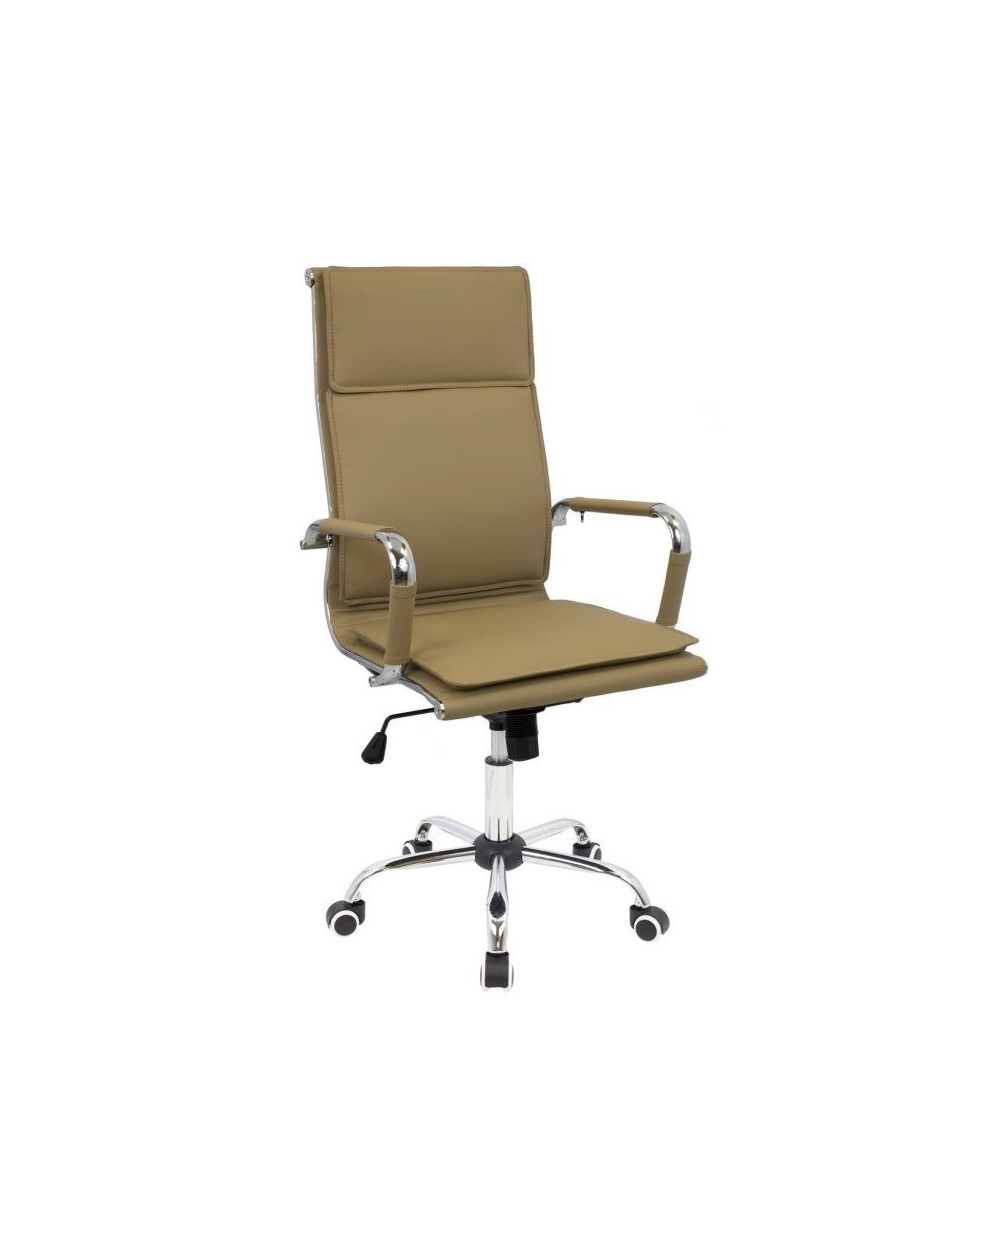 Desktop chair